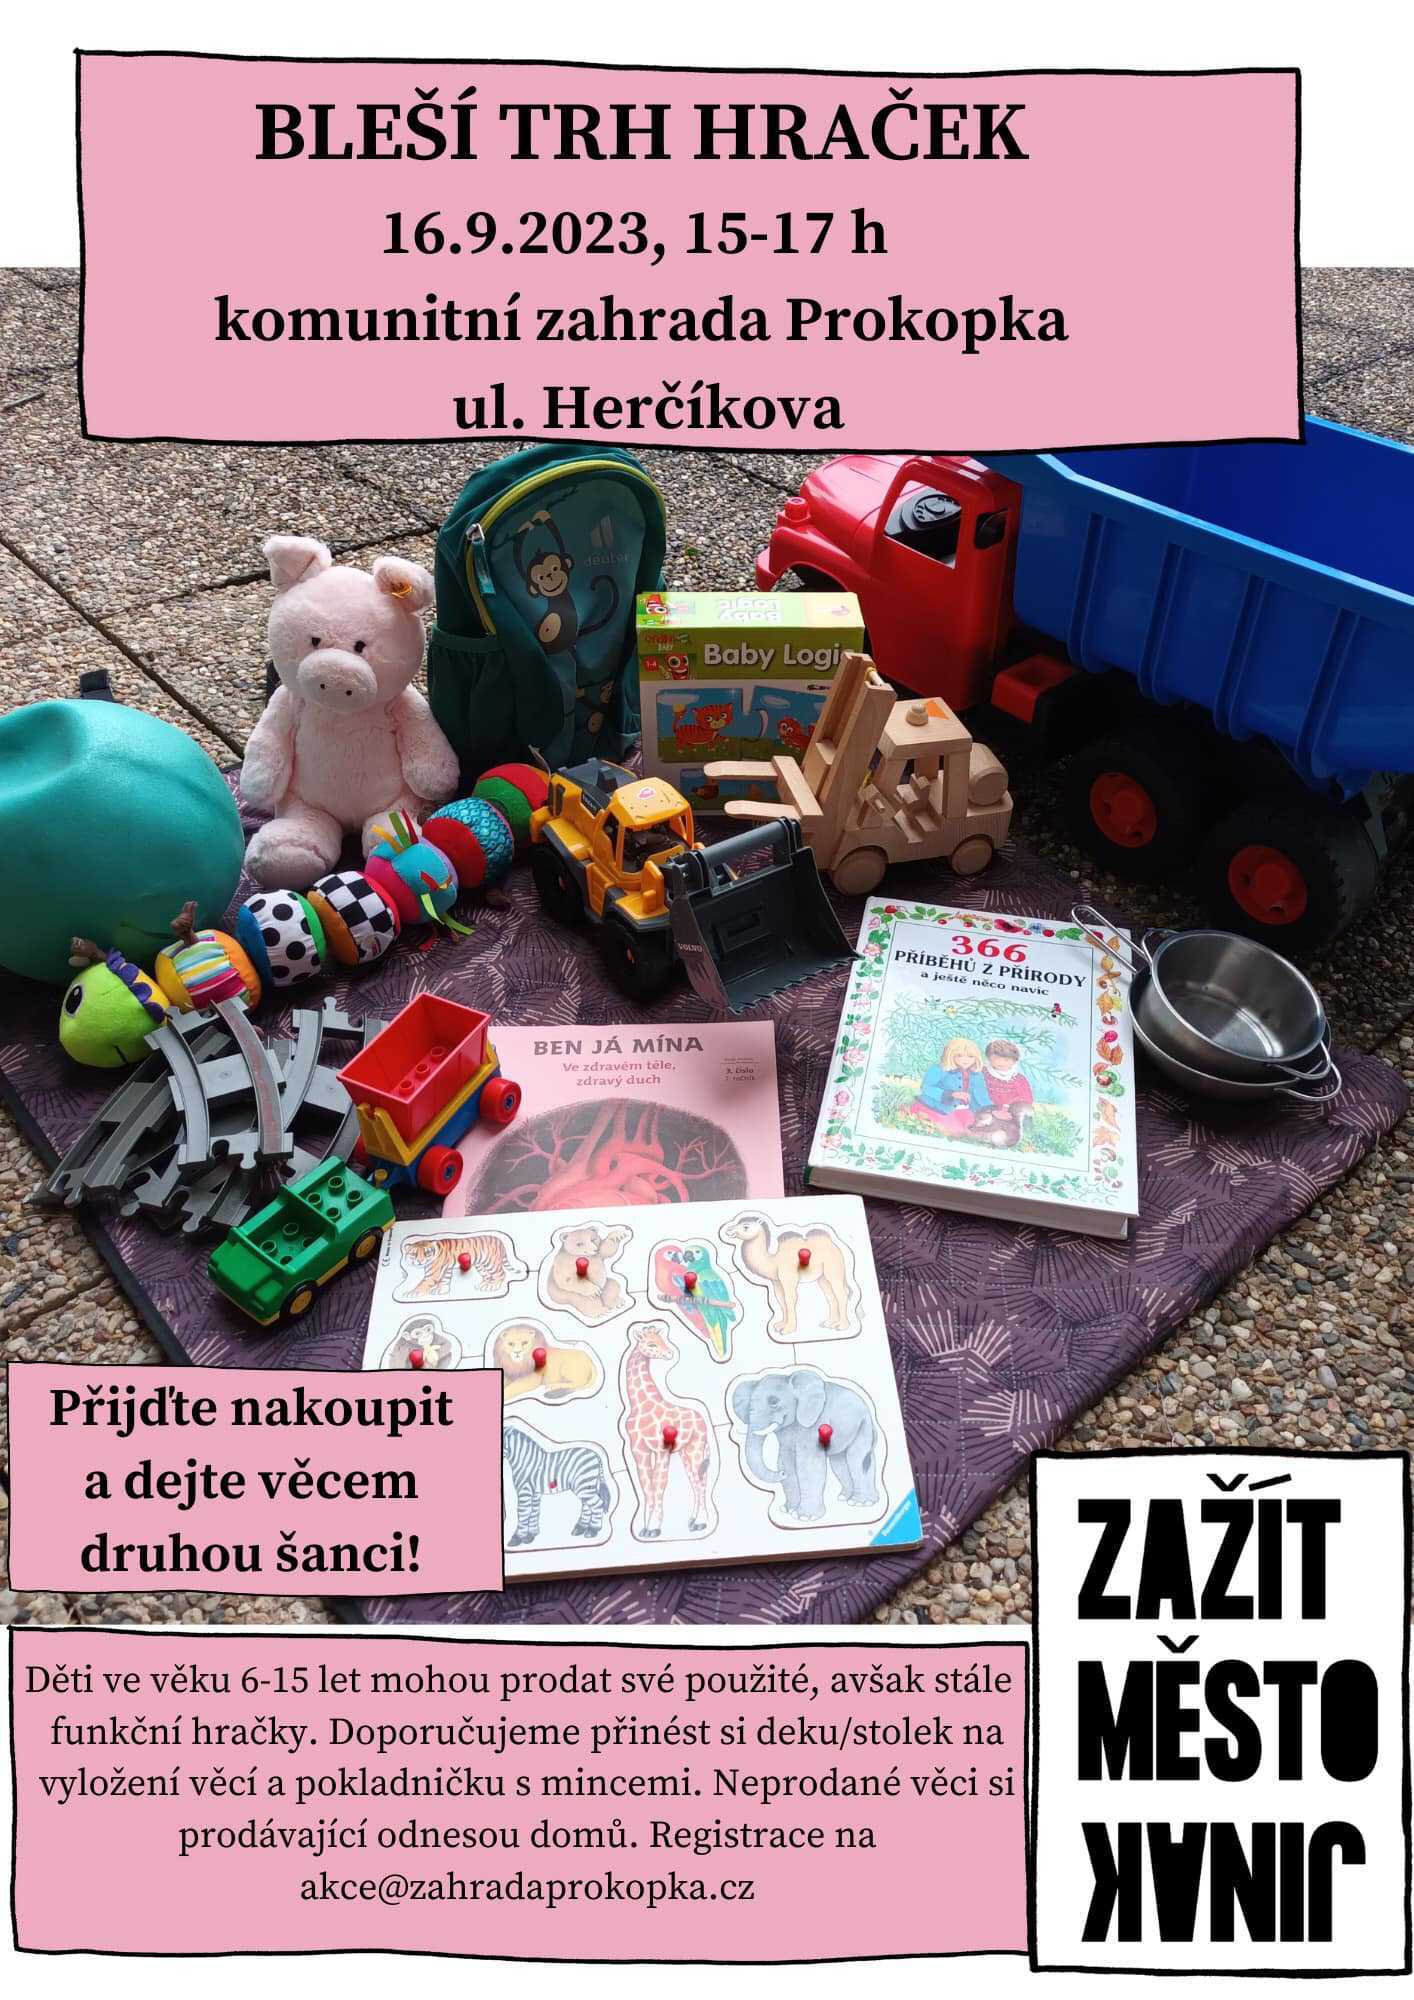 Akce bleší trh hraček pro děti v sobotu na zahradě Prokopka.